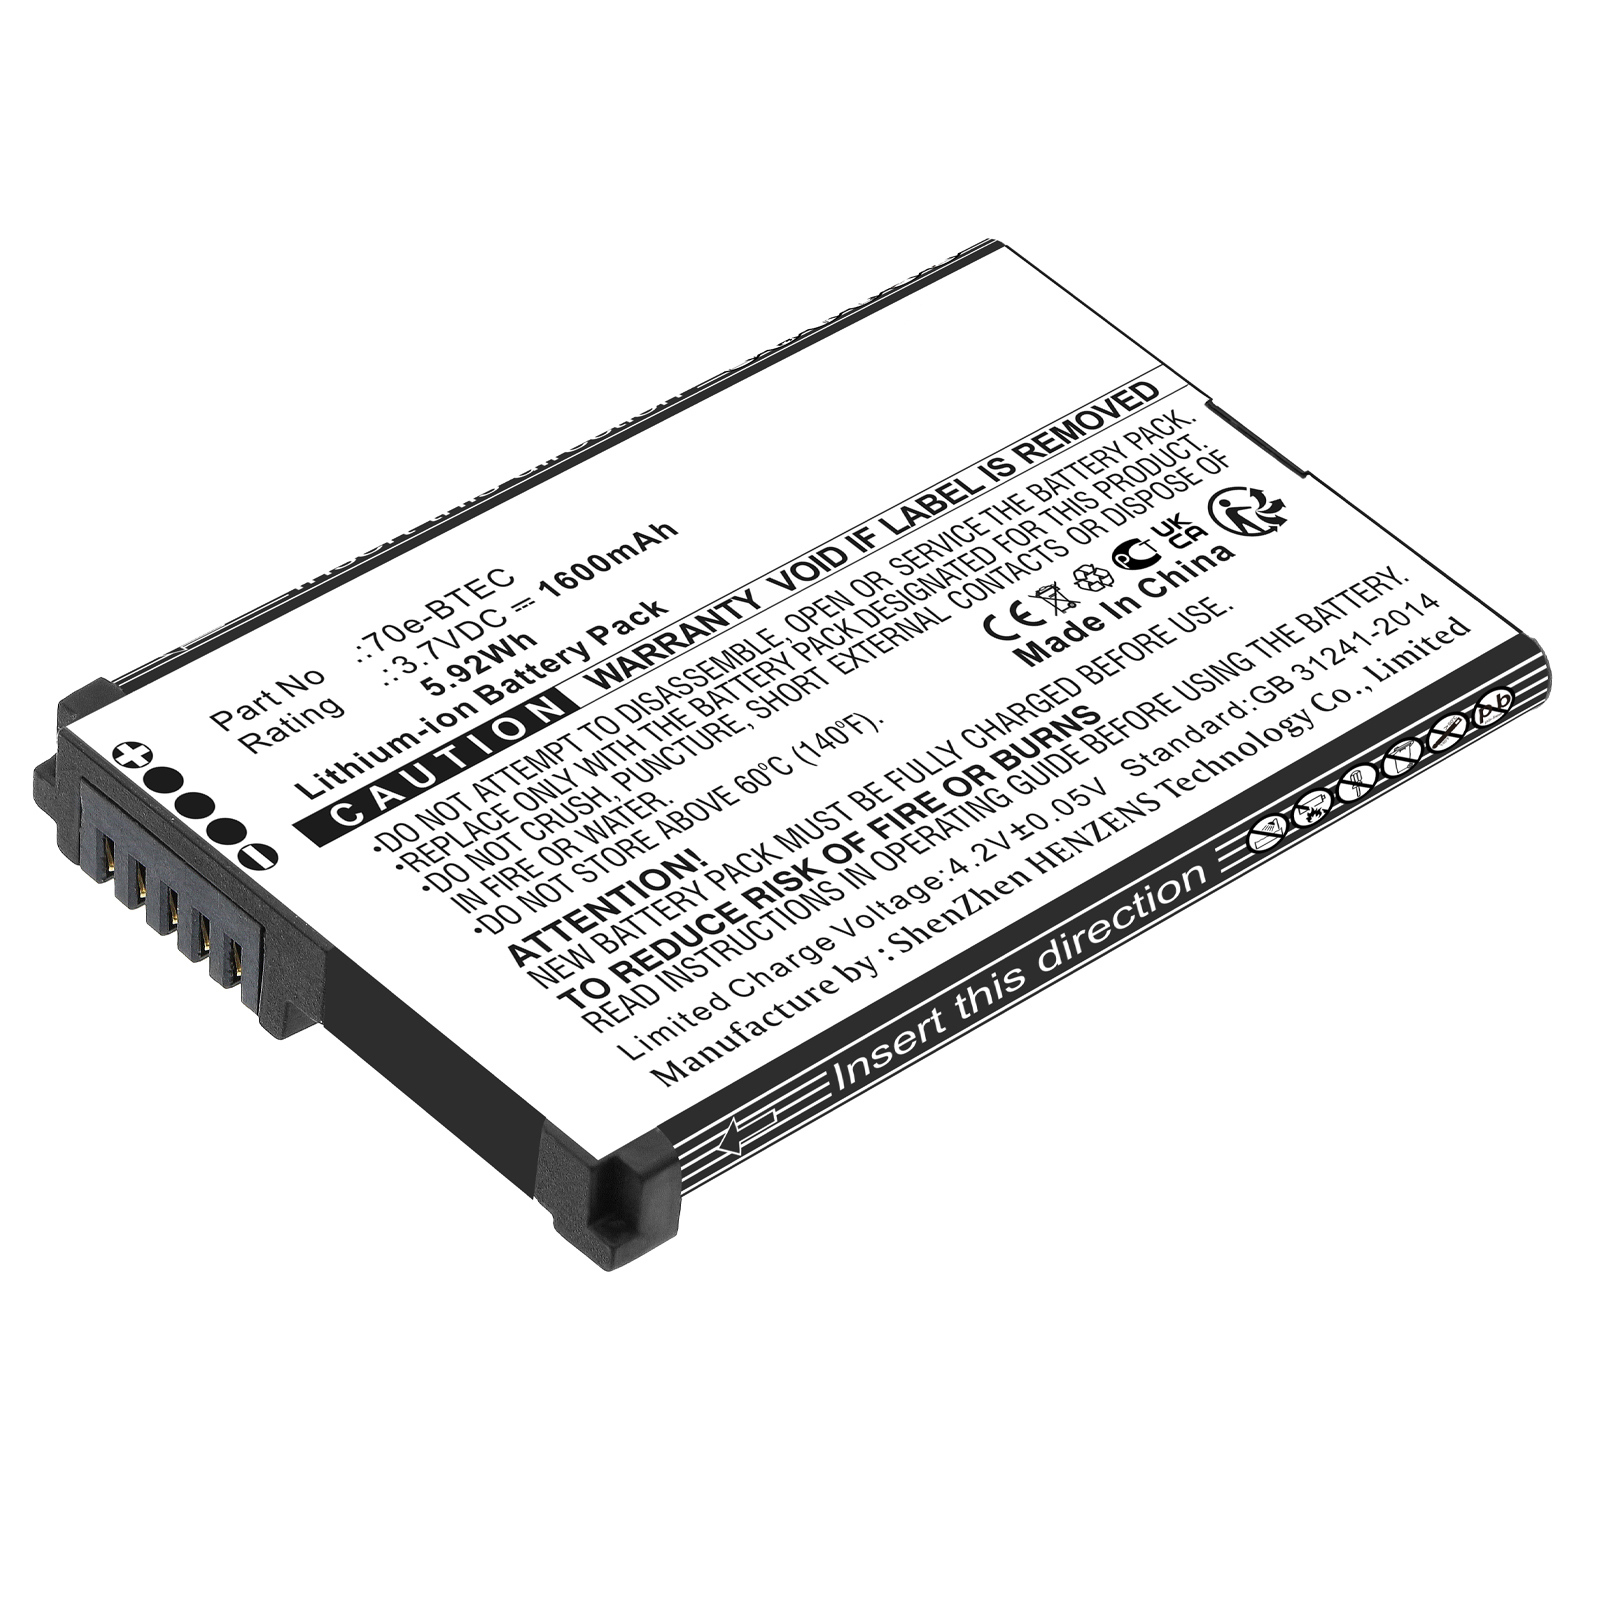 Synergy Digital Barcode Scanner Battery, Compatible with Honeywell 60S-BATT-1 Barcode Scanner Battery (Li-ion, 3.7V, 1600mAh)